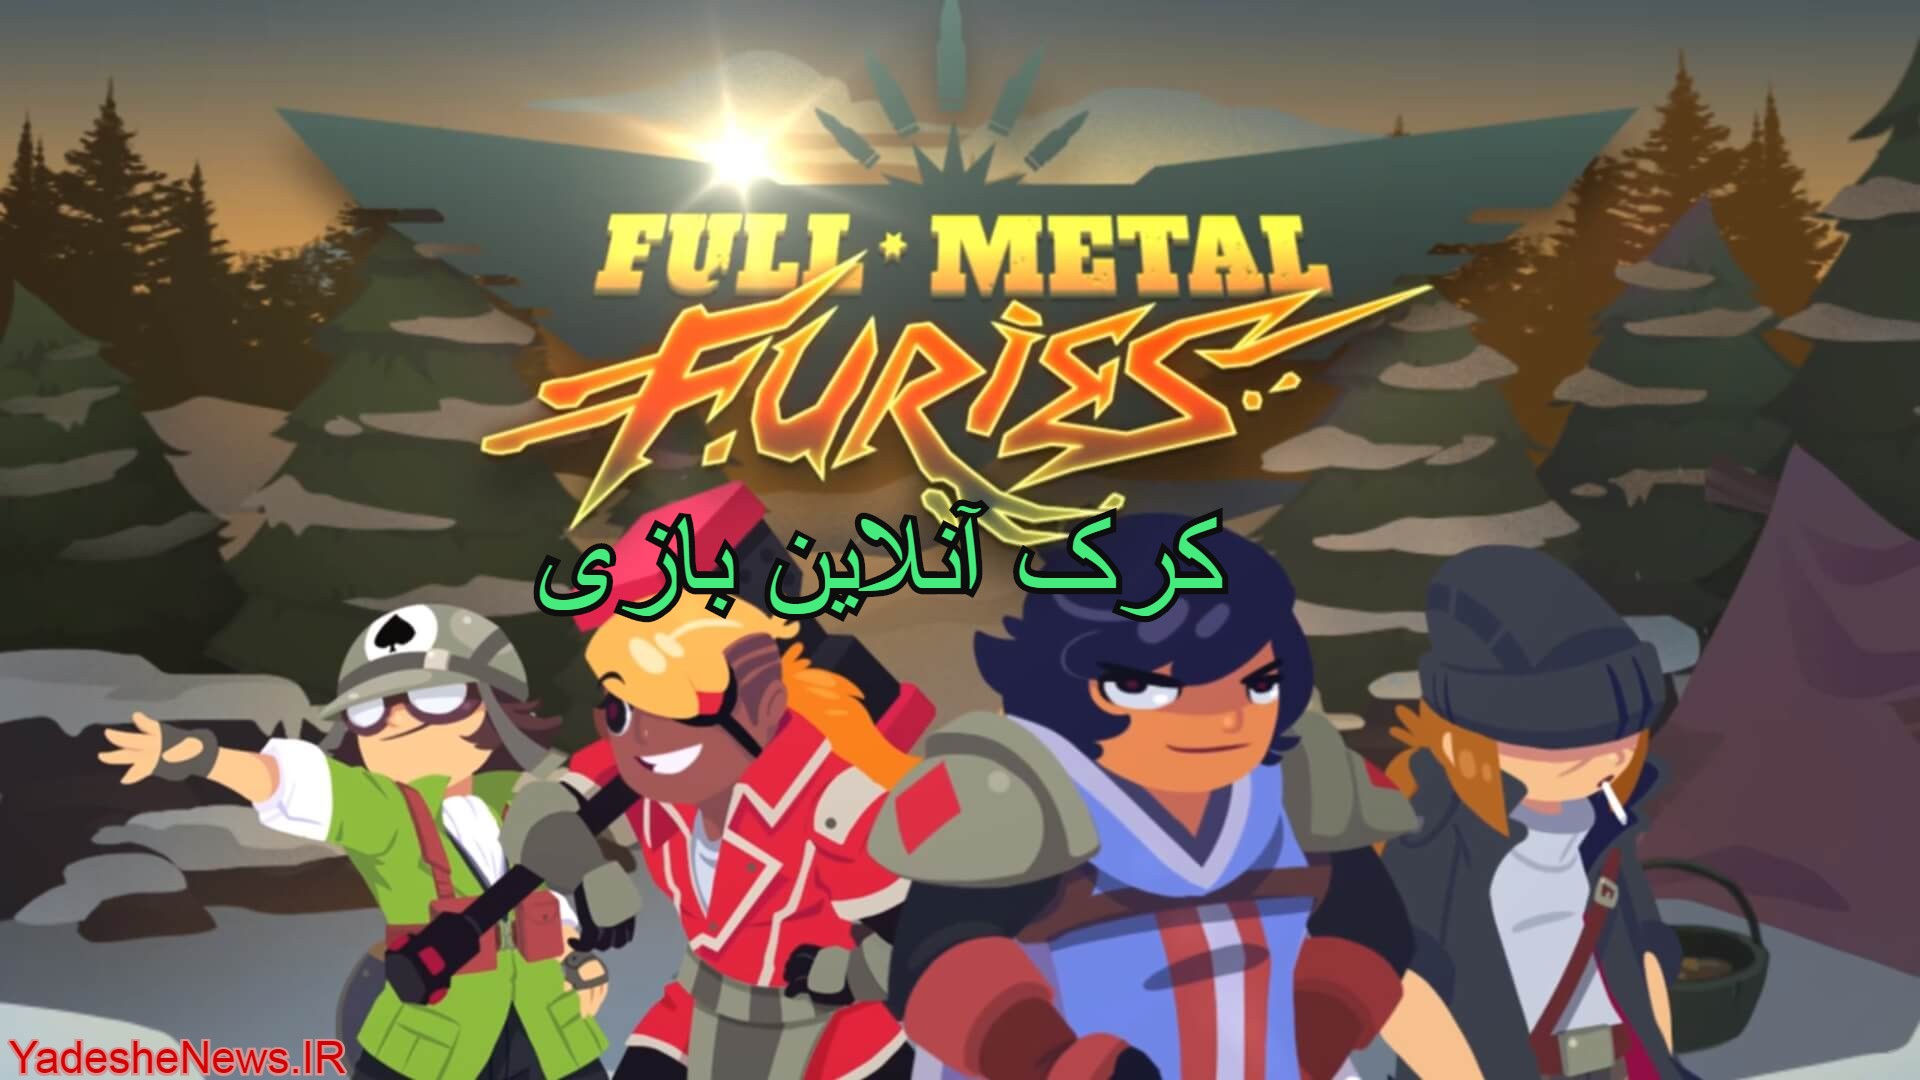 دانلود کرک آنلاین بازی Full Metal Furies